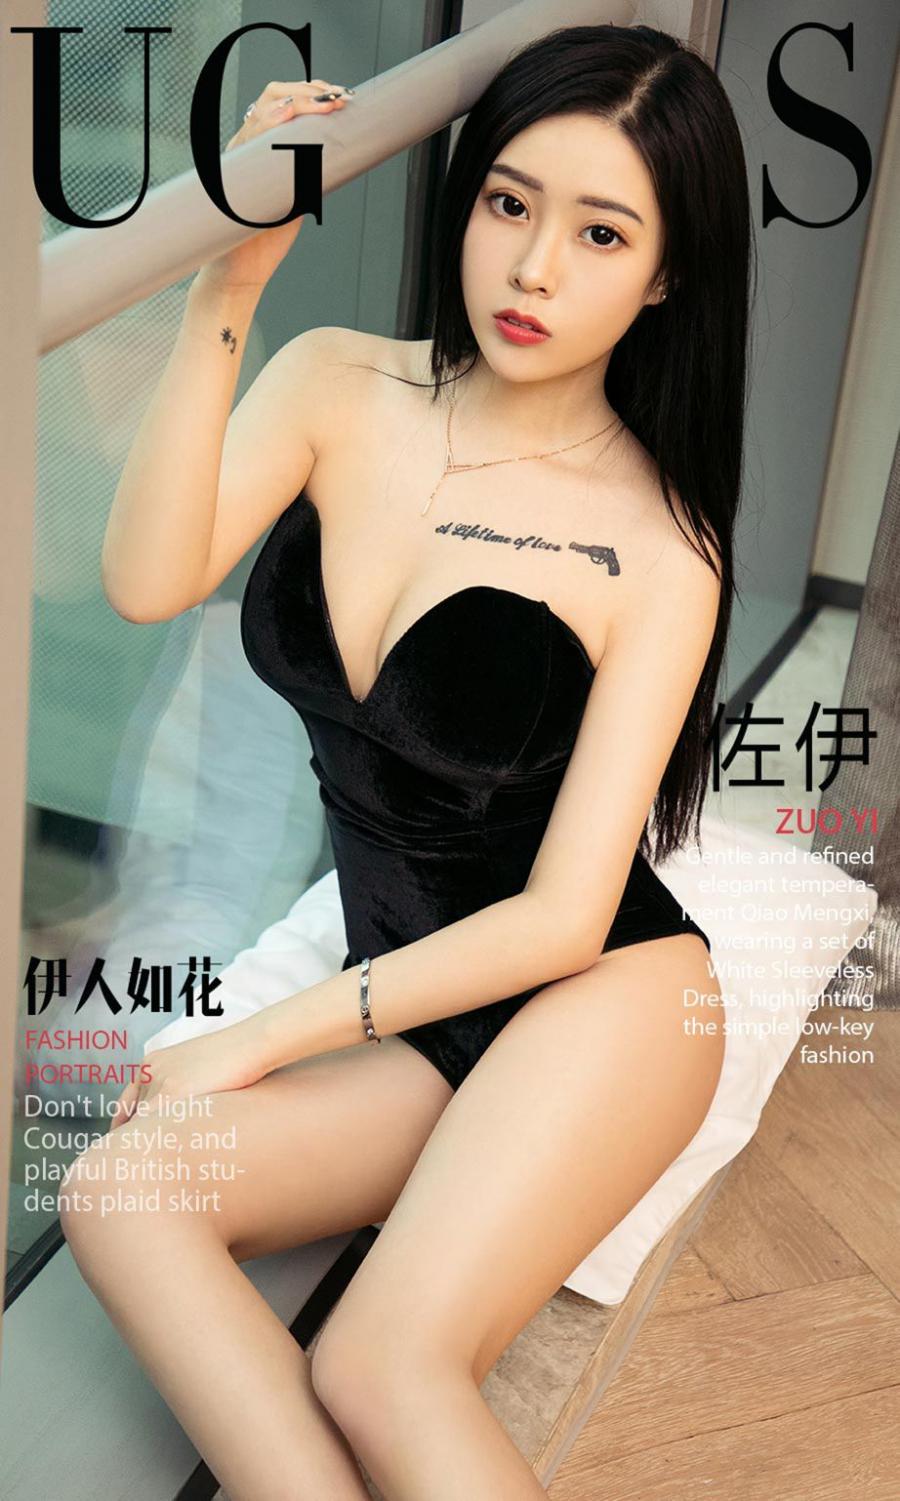 Ugirls App Vol. 1072 Zuo Yi